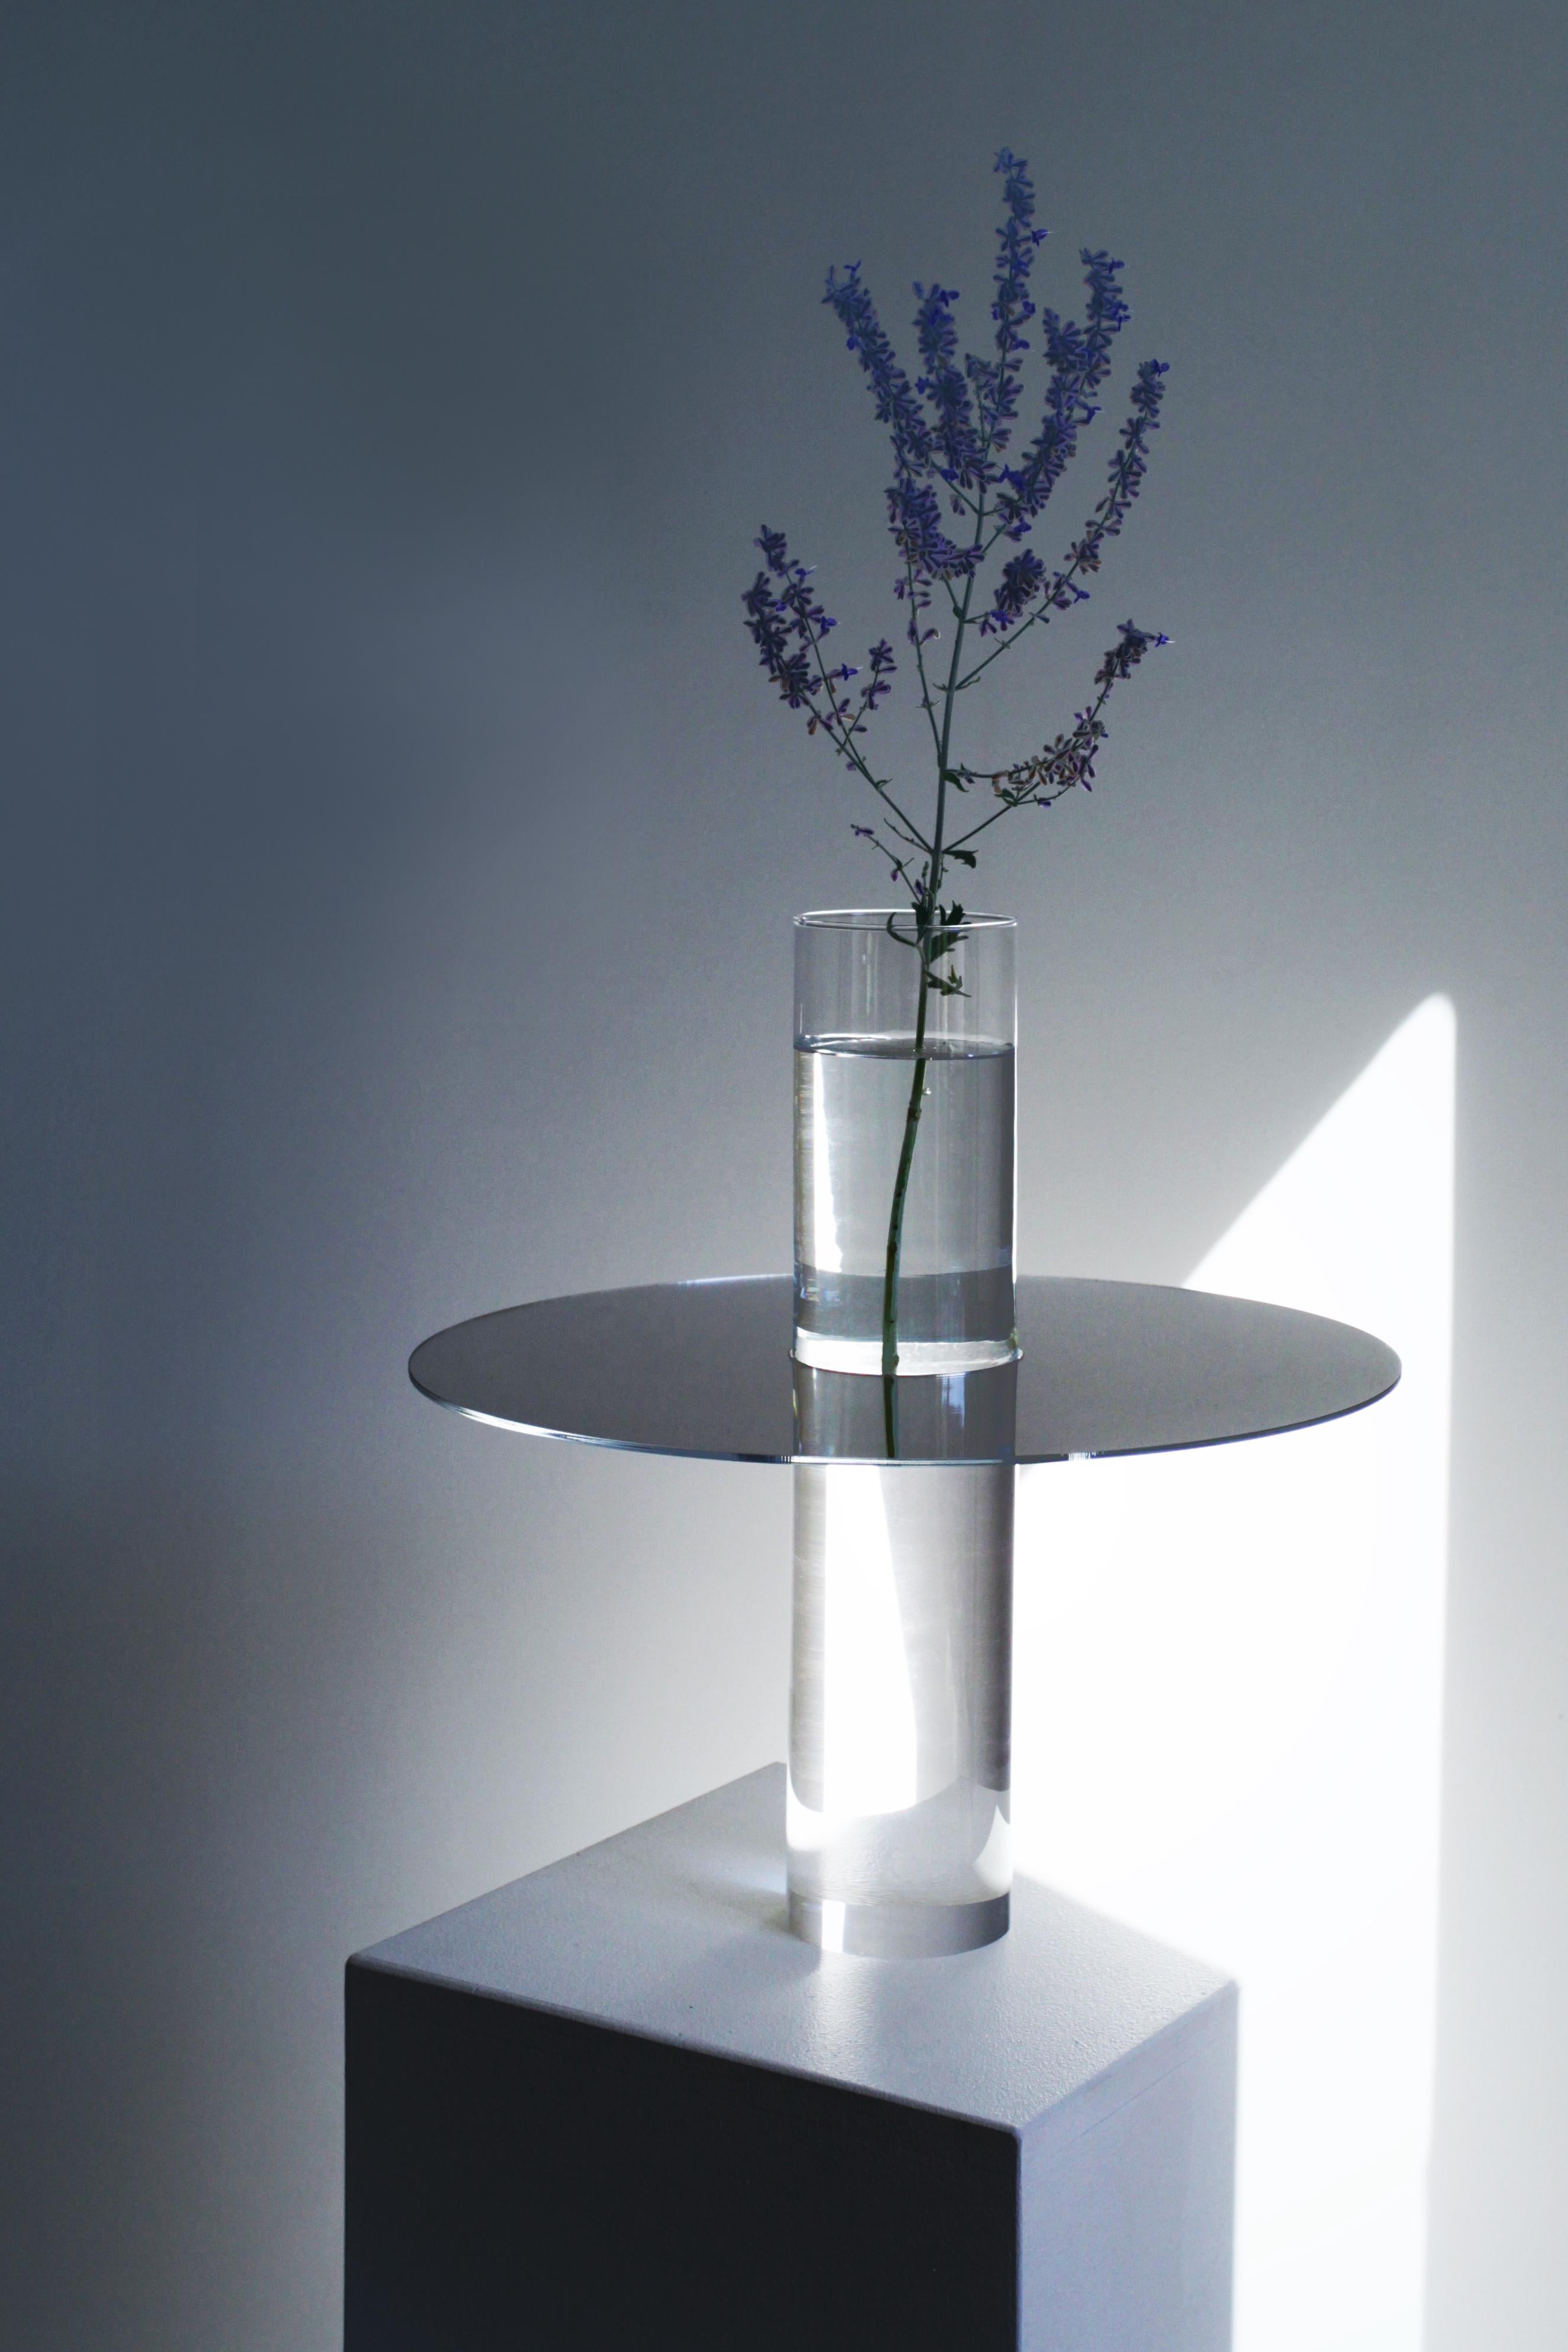 Vase Sakura Enigmatic d'Arturo Erbsman
Fait à la main, Edition limitée, Signé et numéroté
Dimensions : Taille1 : 29 x 28 x 29 cm, Taille2 : 39 x 40 x 39 cm
Matériaux : Verre acrylique et miroir / récipient en verre

Fidèle à son nom, le vase